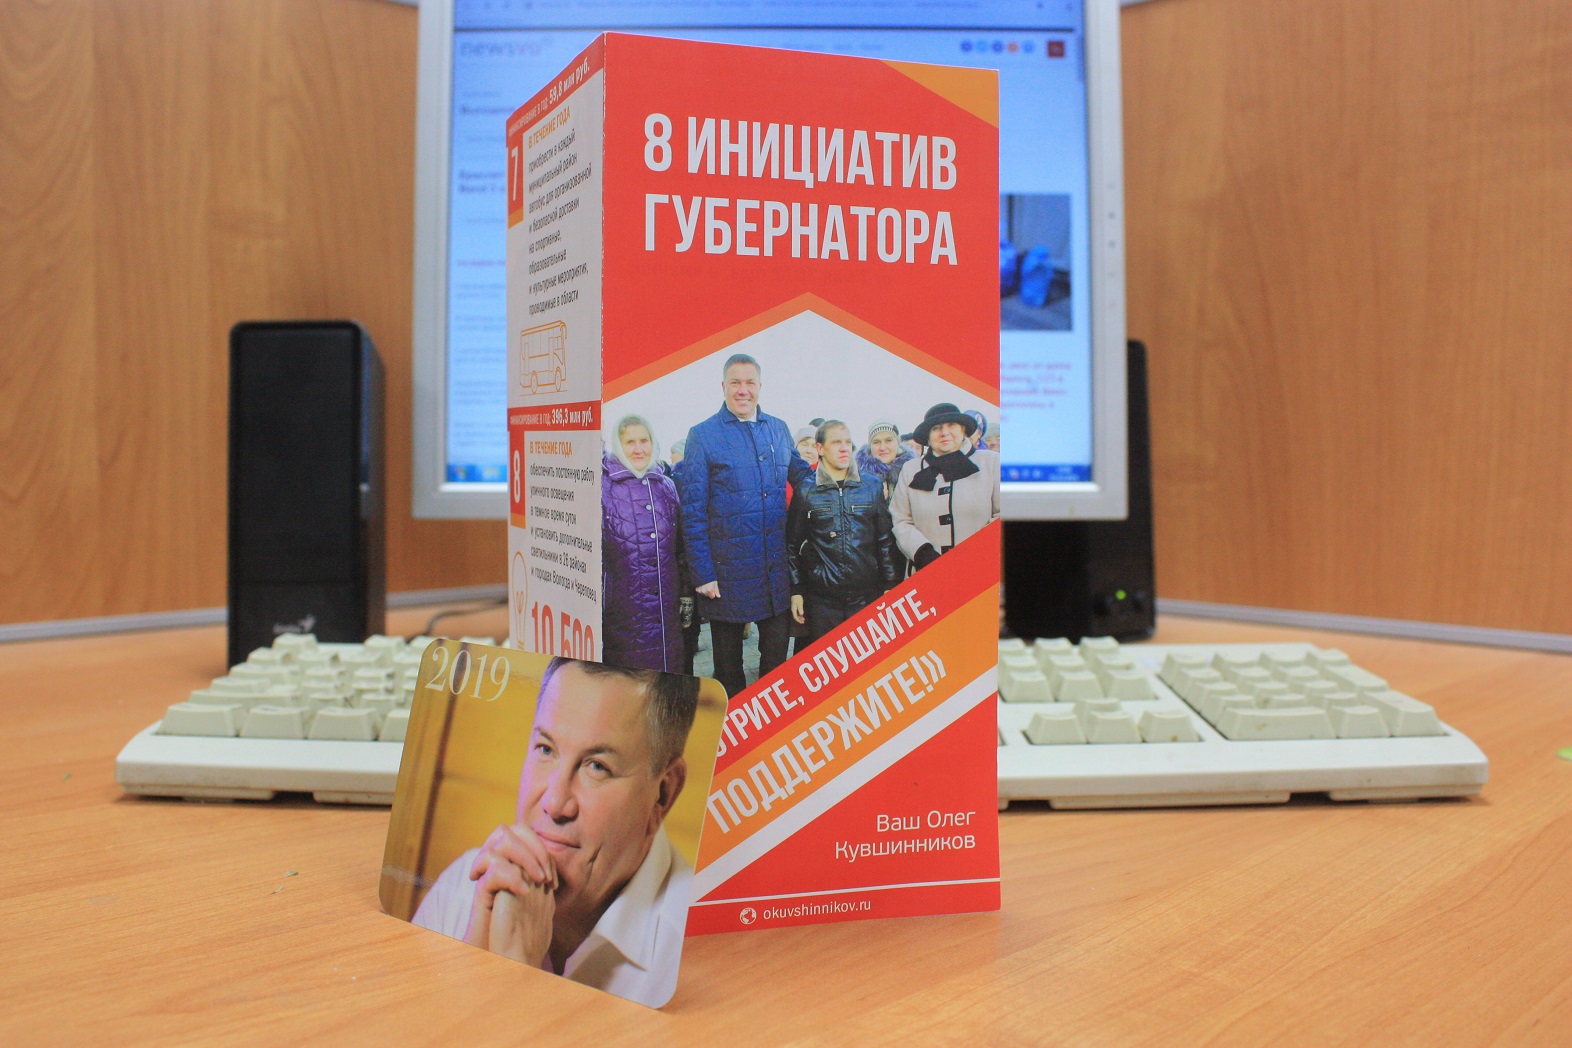 В правительстве Вологодской области не знают, кто издал брошюру «8 инициатив губернатора»?